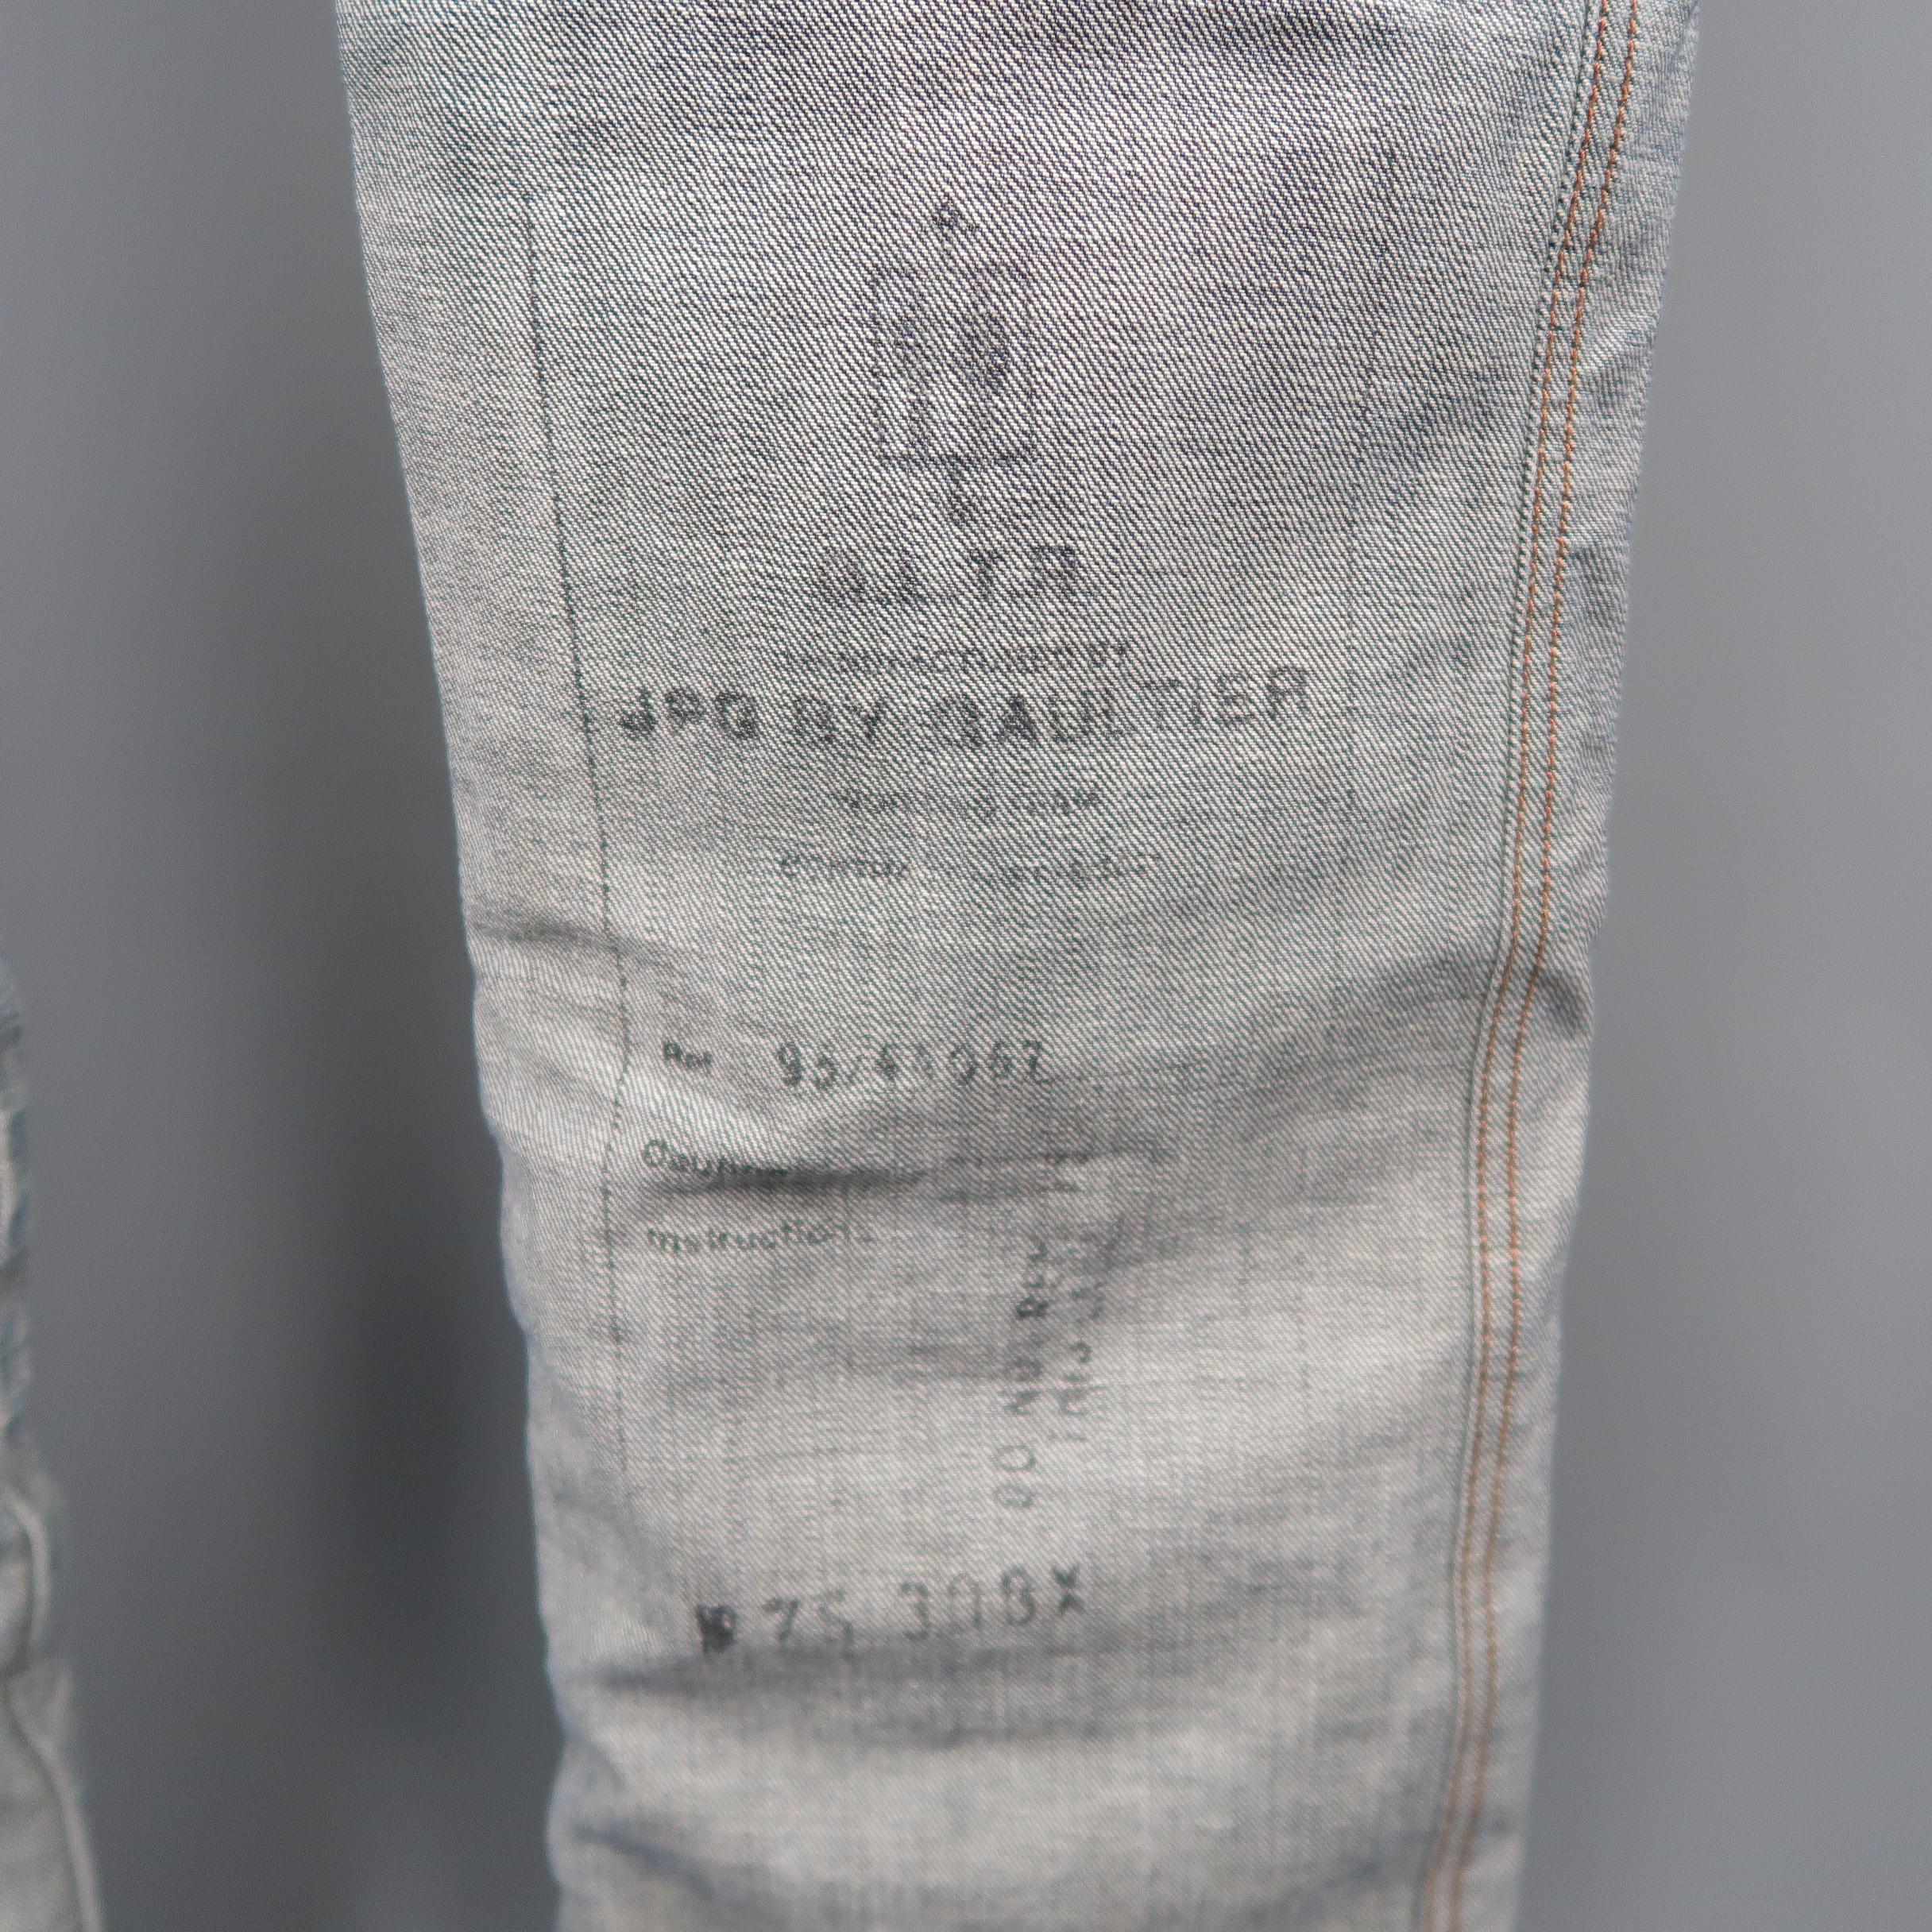 Gray JEAN PAUL GAULTIER JPG JEANS Size 31 Dark Wash Oversized Cuff Jeans